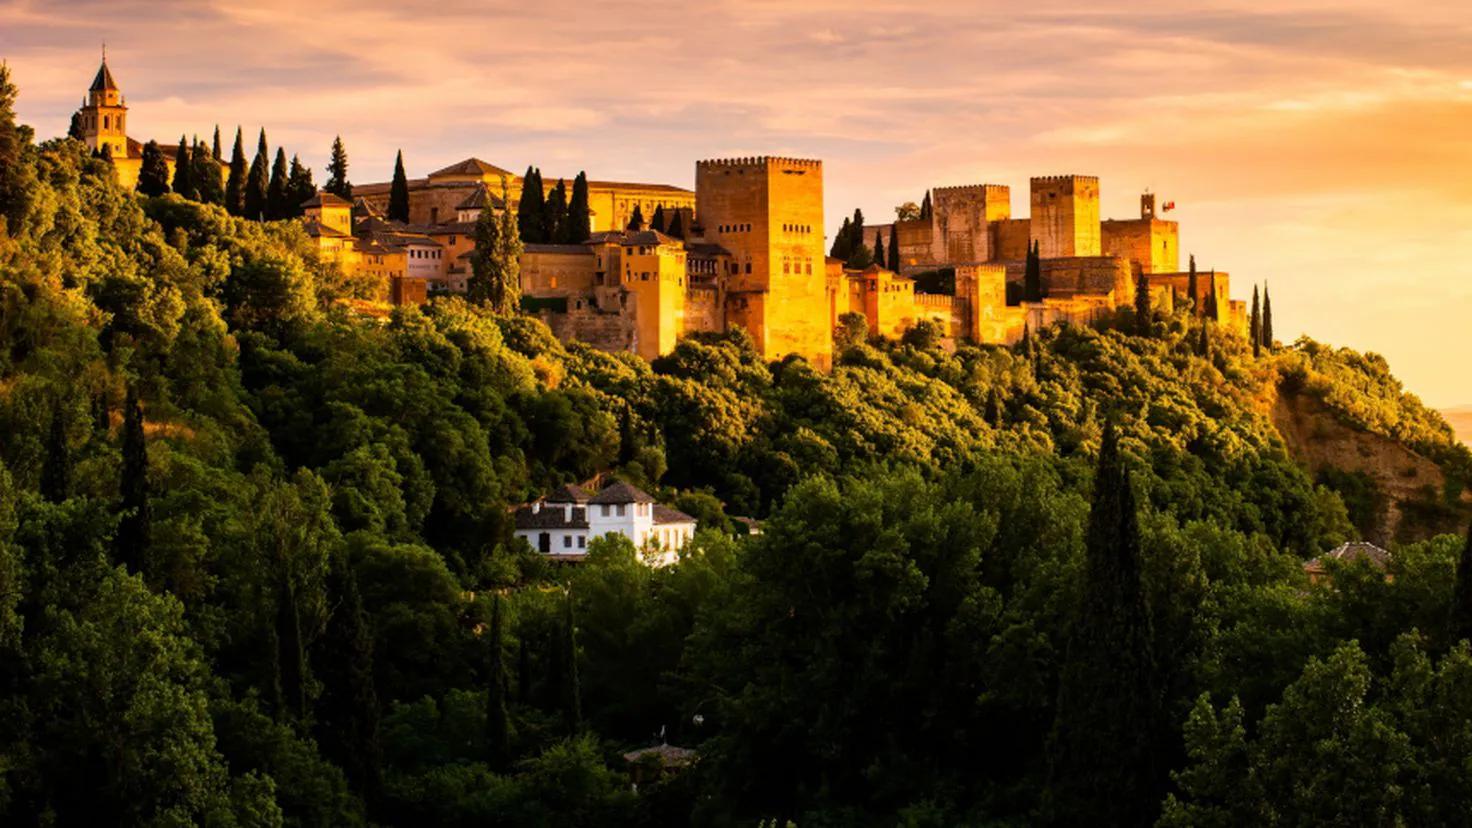 eje prado recoletos unesco - Cuántos lugares hay en España declarados Patrimonio de la Humanidad